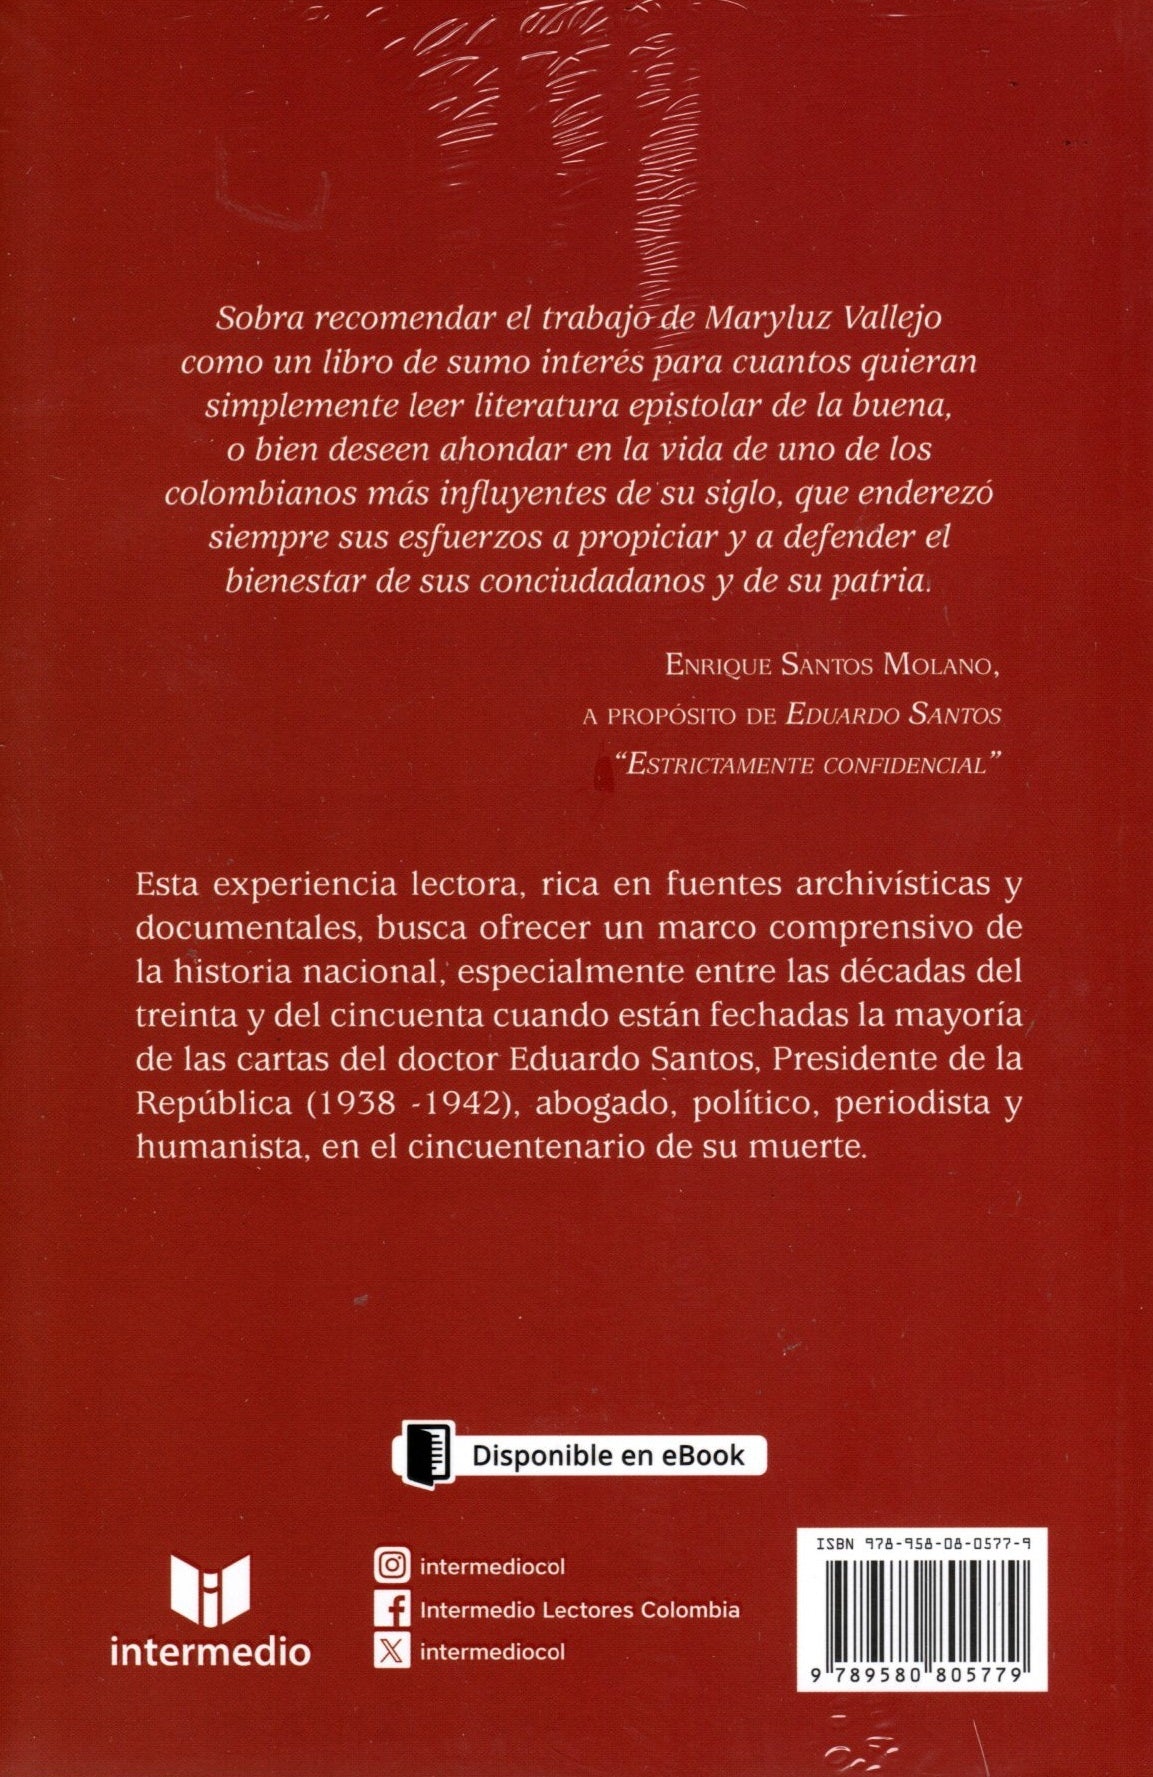 Libro Maryluz Vallejo Mejía - "Estrictamente confidencial"